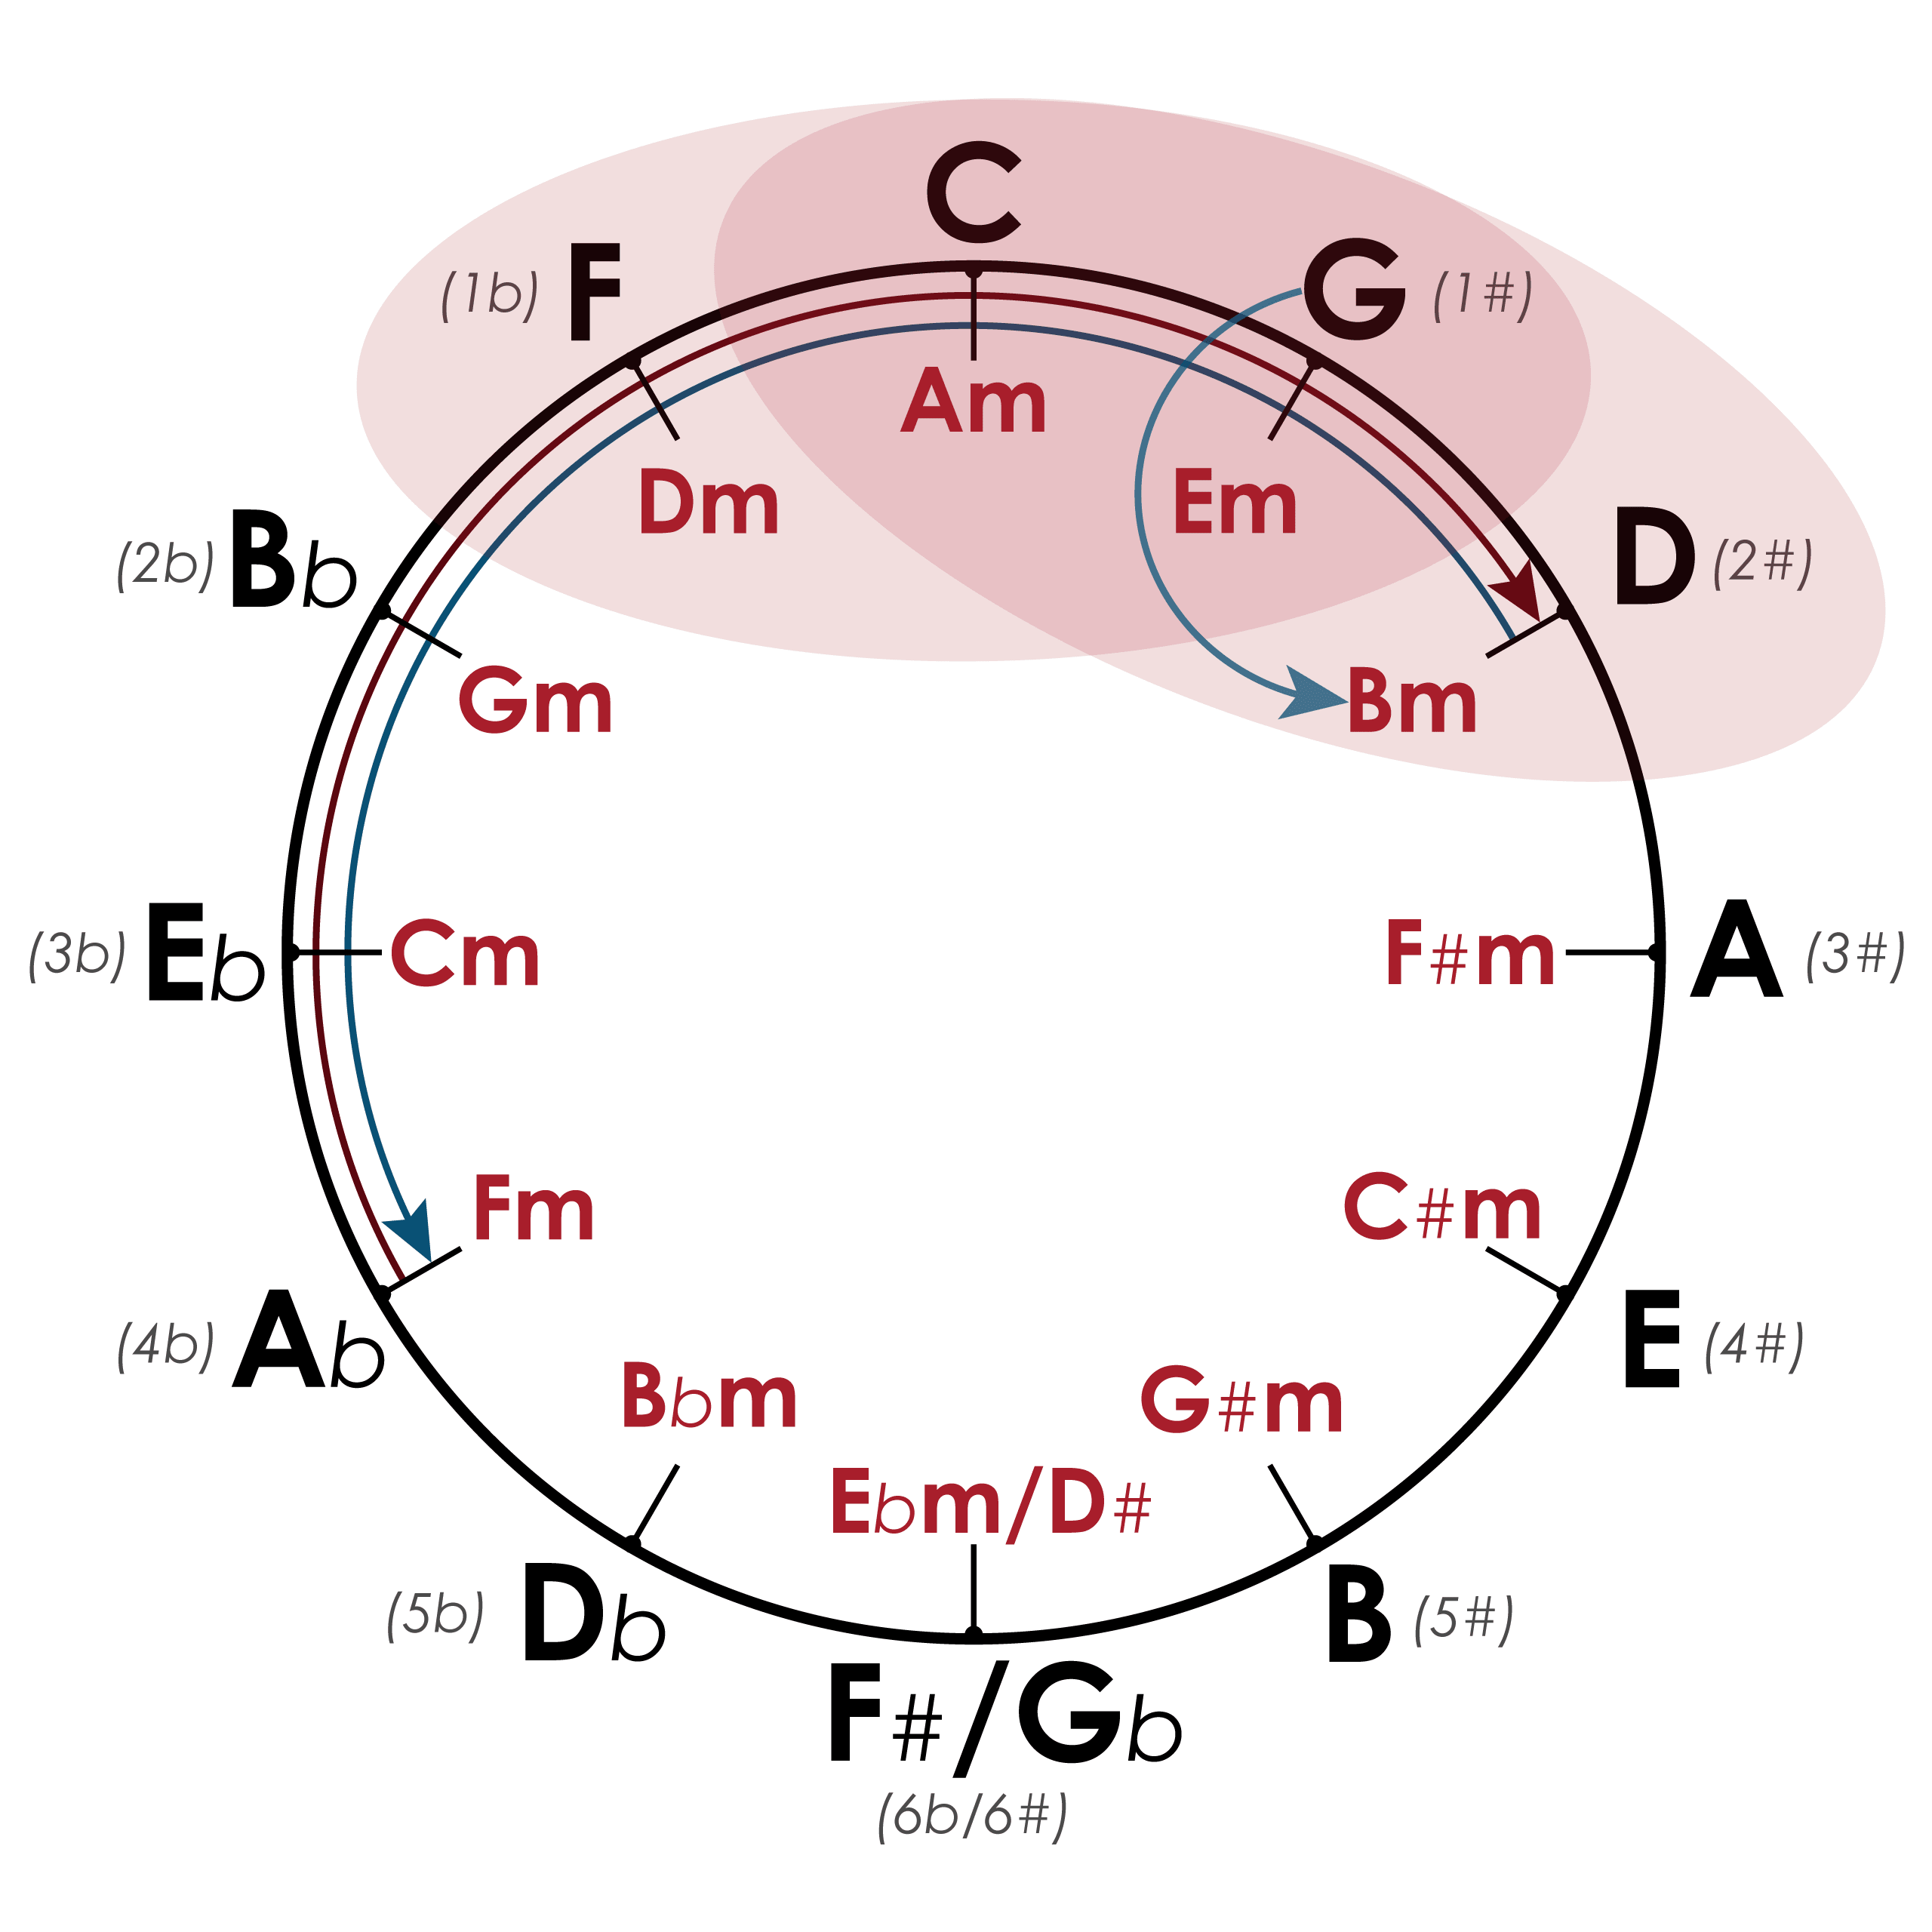 Модуляция в соседнюю тональность с помощью кварто-квинтового круга